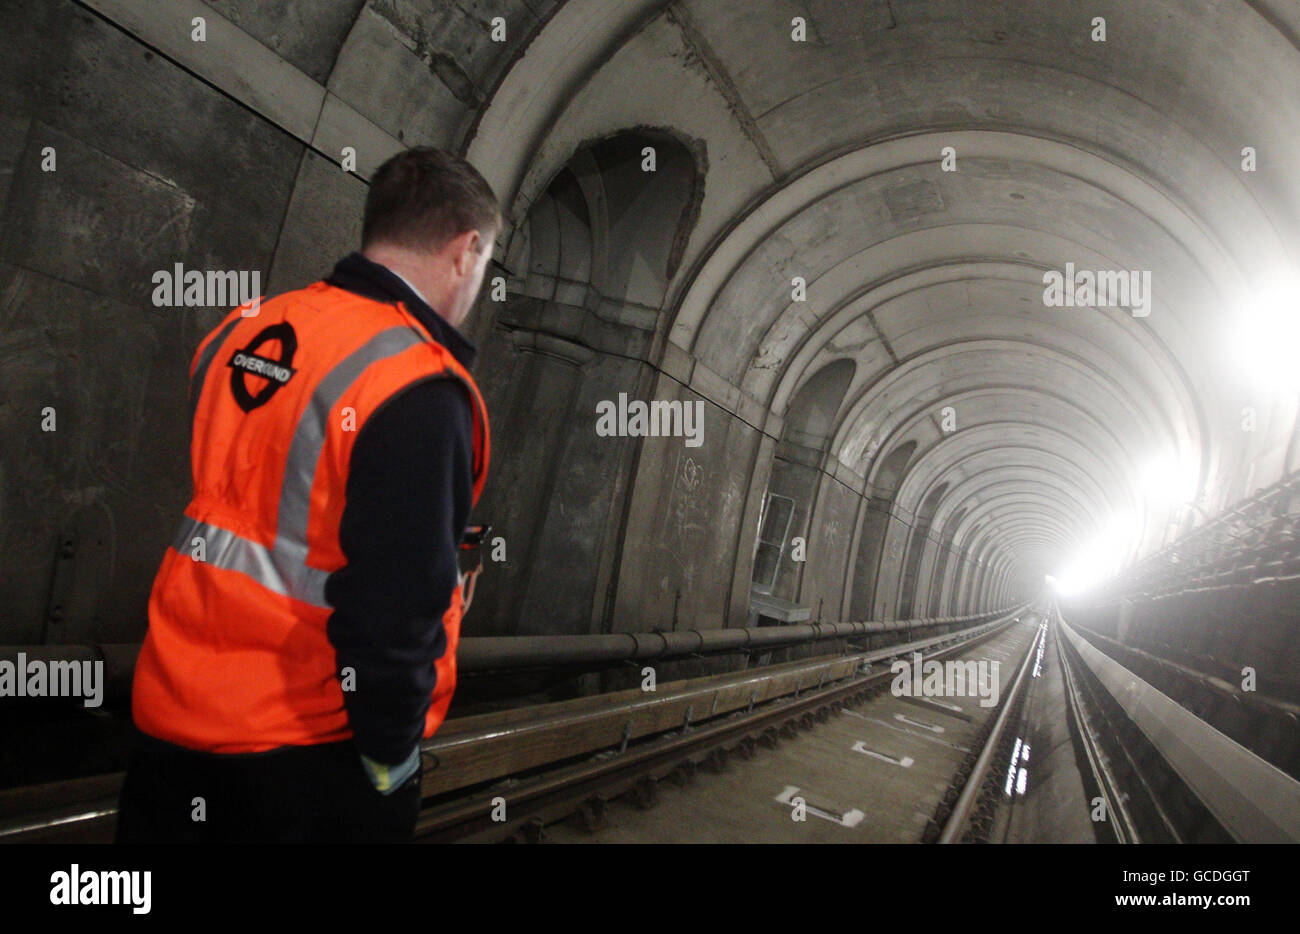 Brunels Thames Tunnel, der nach 145 Jahren für die Öffentlichkeit wieder geöffnet werden soll. Der Tunnel von Rotherhithe nach Wapping wird als Finale des Londoner EAST Festivals eröffnet. Stockfoto